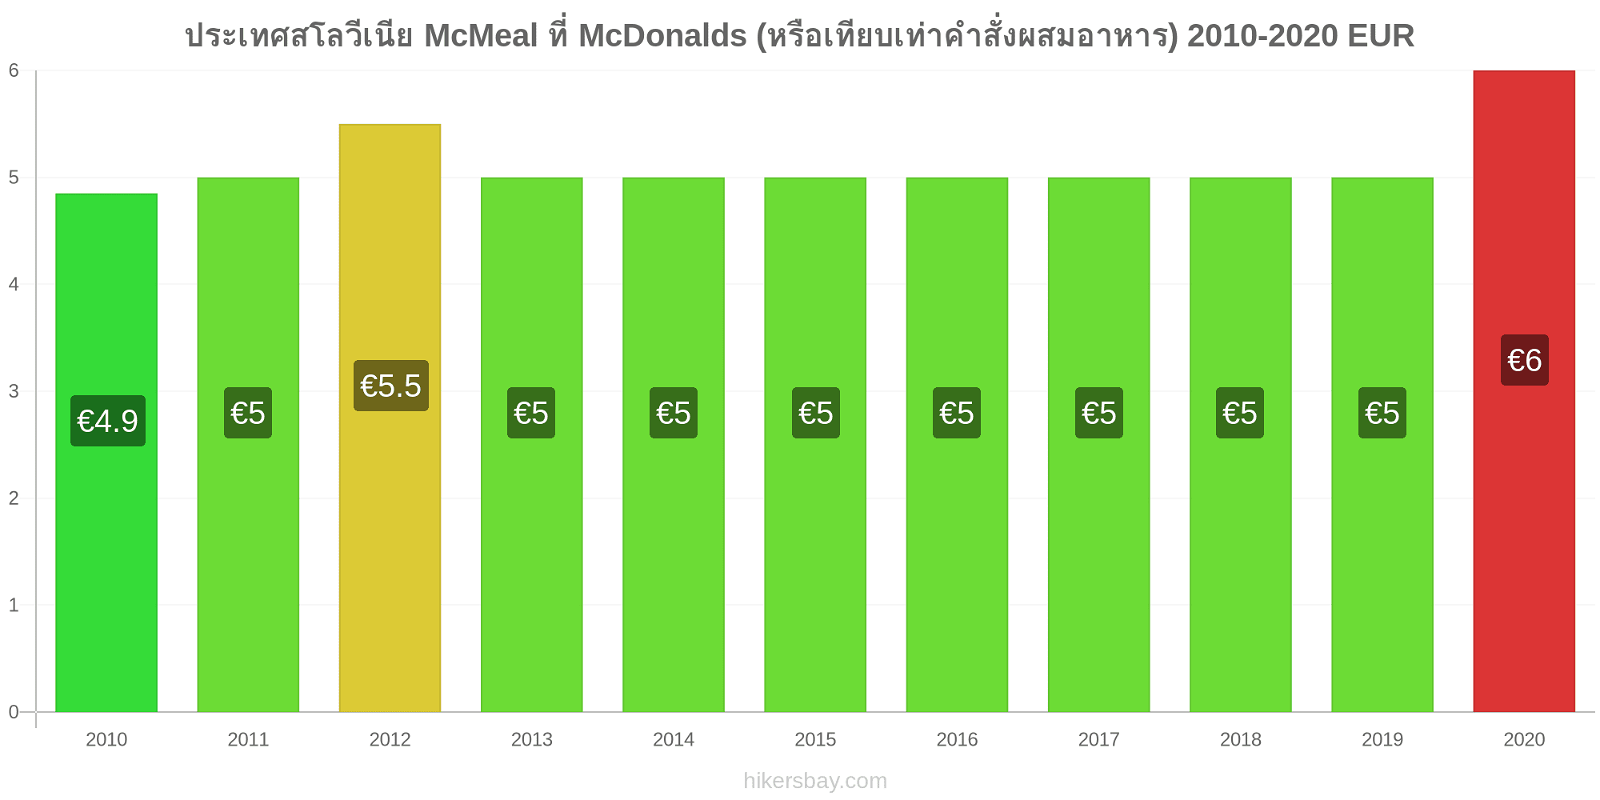 ประเทศสโลวีเนีย การเปลี่ยนแปลงราคา McMeal ที่ McDonalds (หรือเทียบเท่าคำสั่งผสมอาหาร) hikersbay.com